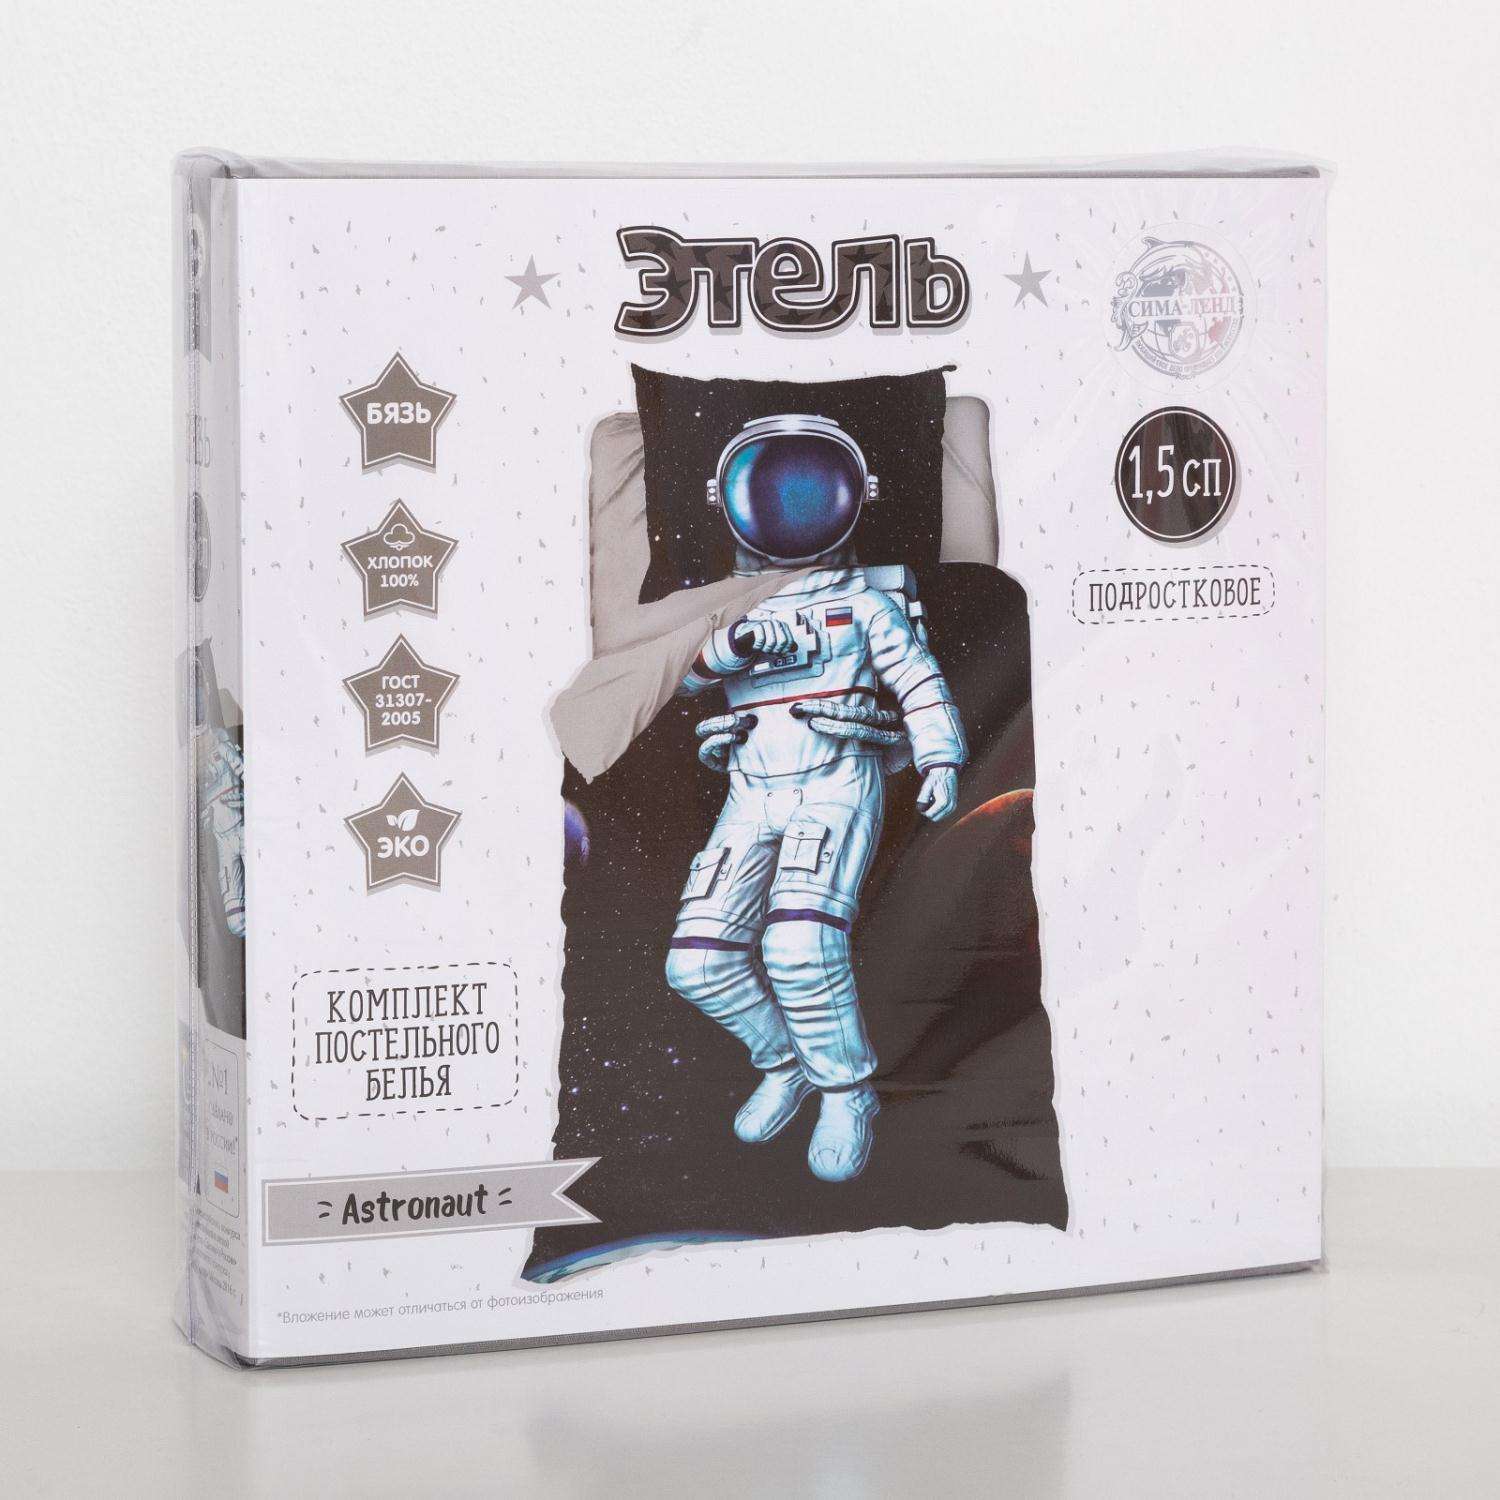 Комплект постельного белья Этель Astronaut - фото 5